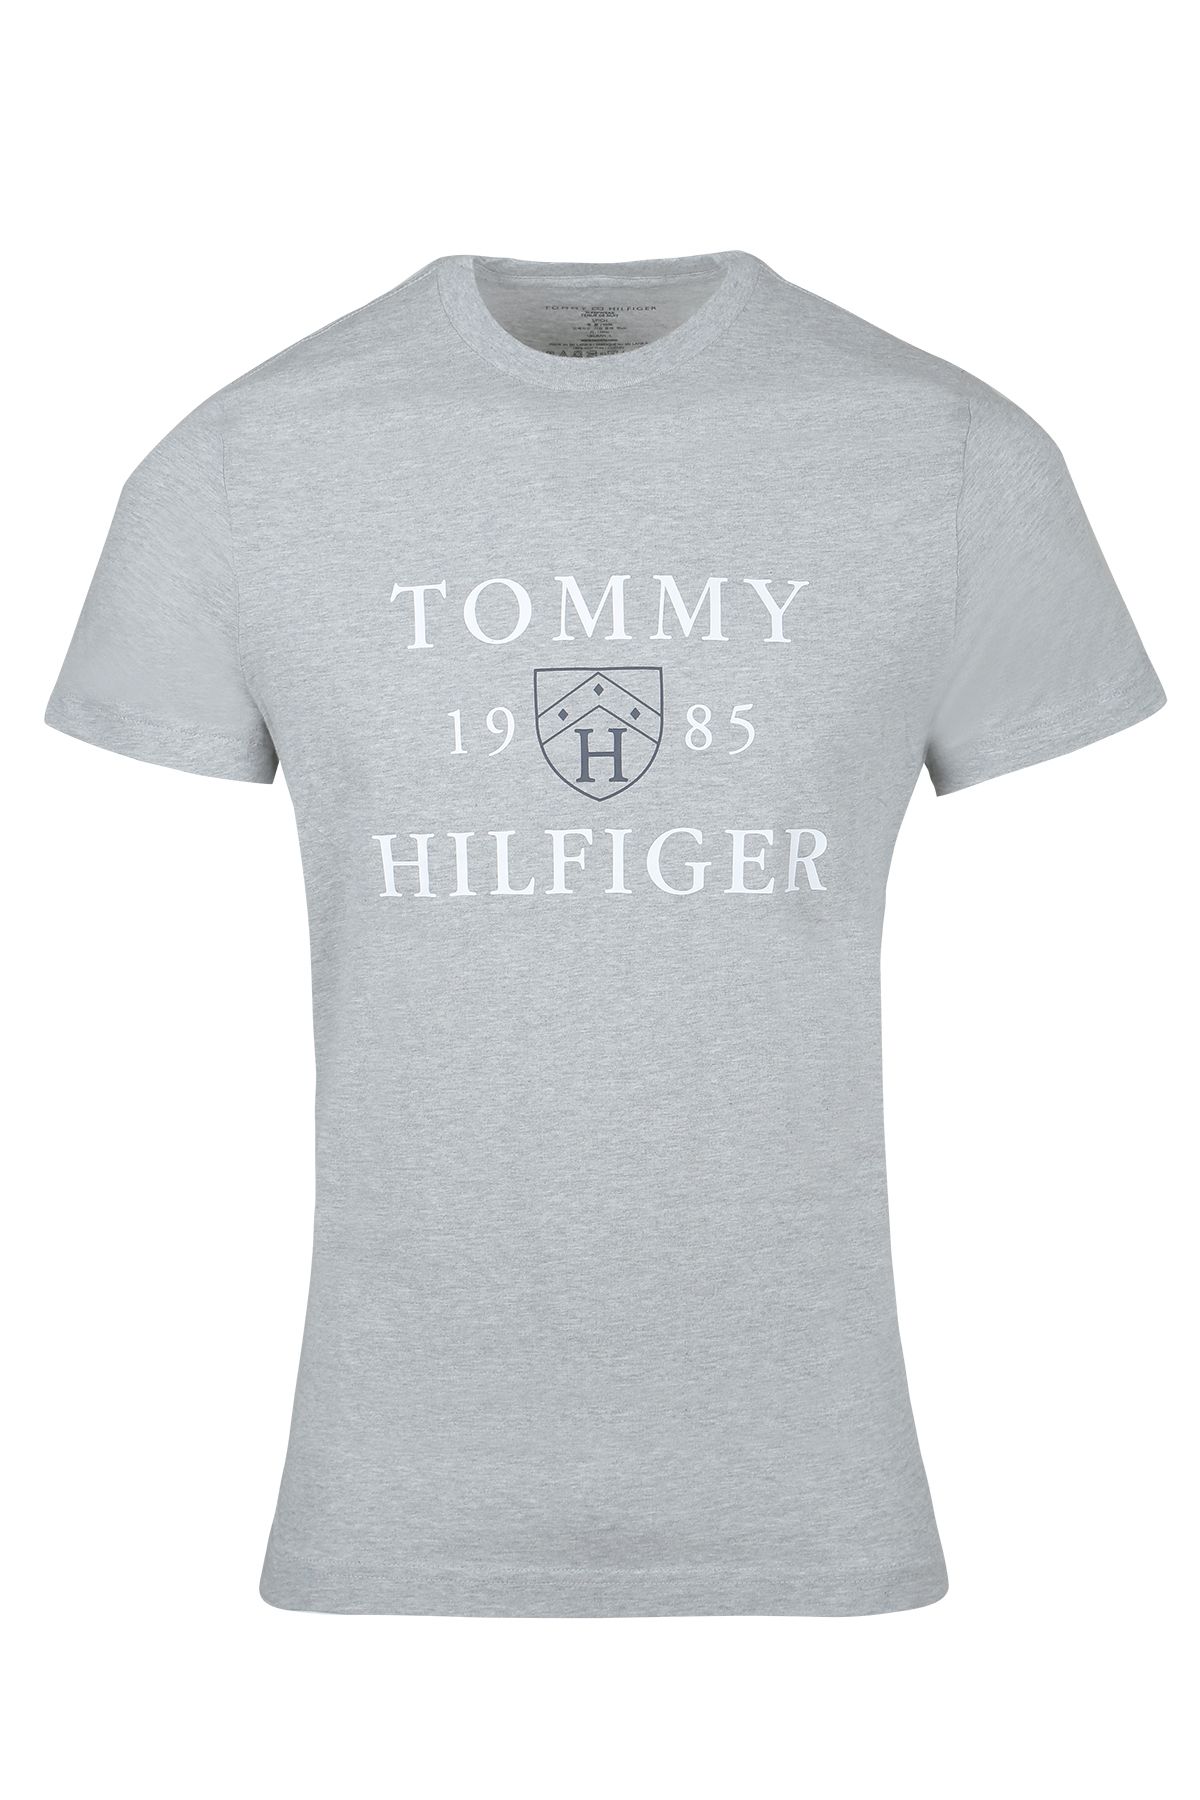 Tommy Hilfiger Tommy Hılfıger Erkek T-shırt 09t4210-004